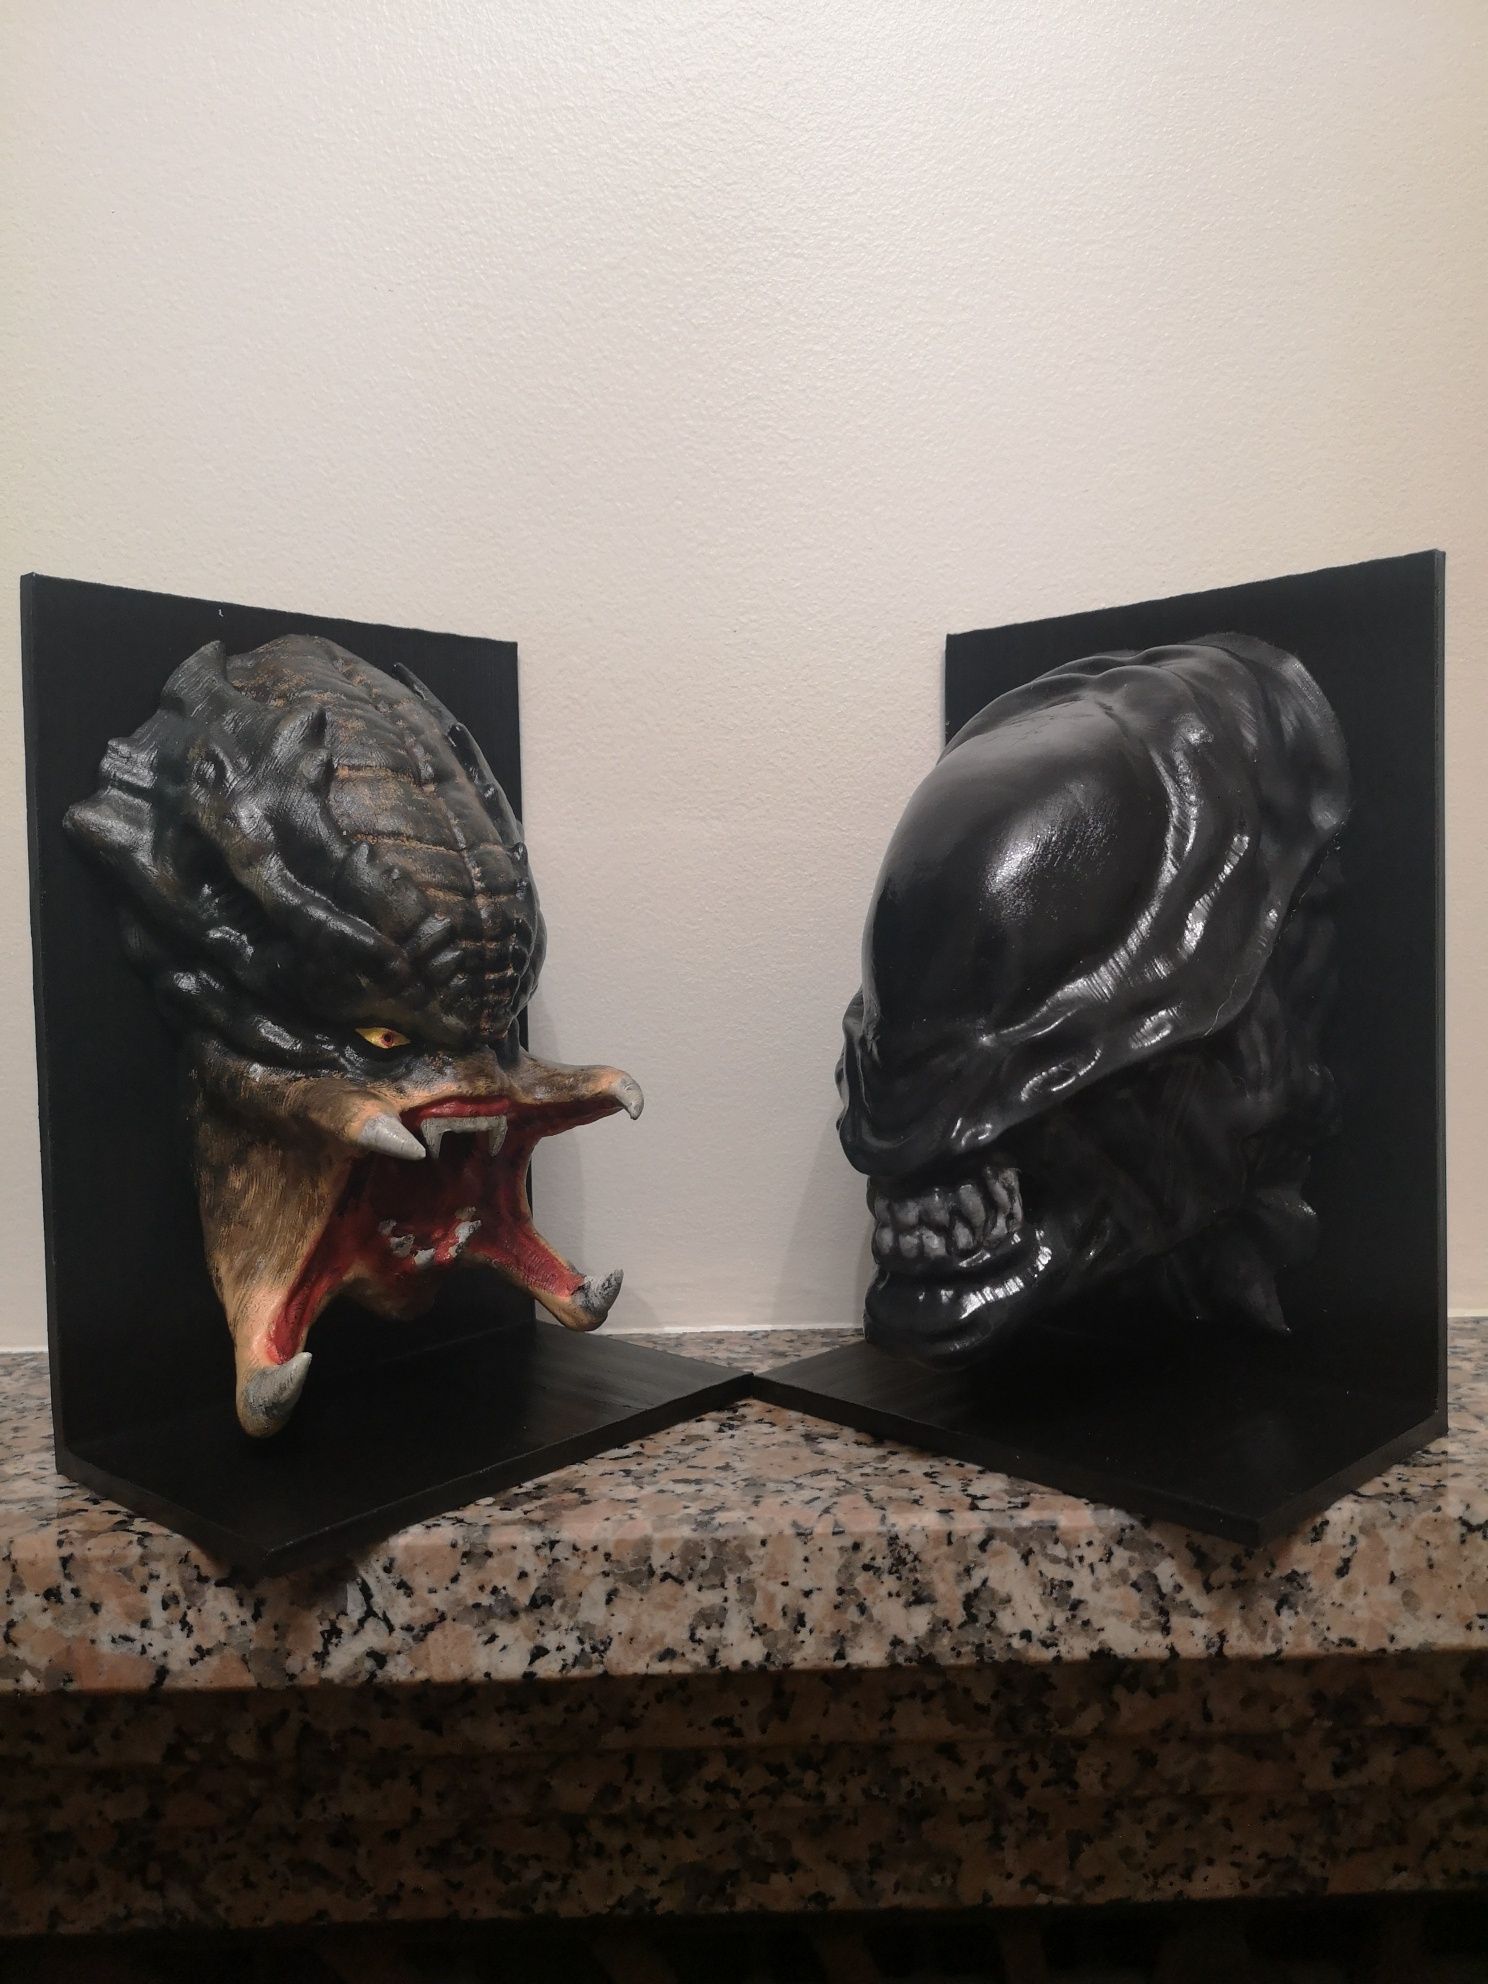 Réplica das cabeças do Predador e do Alien